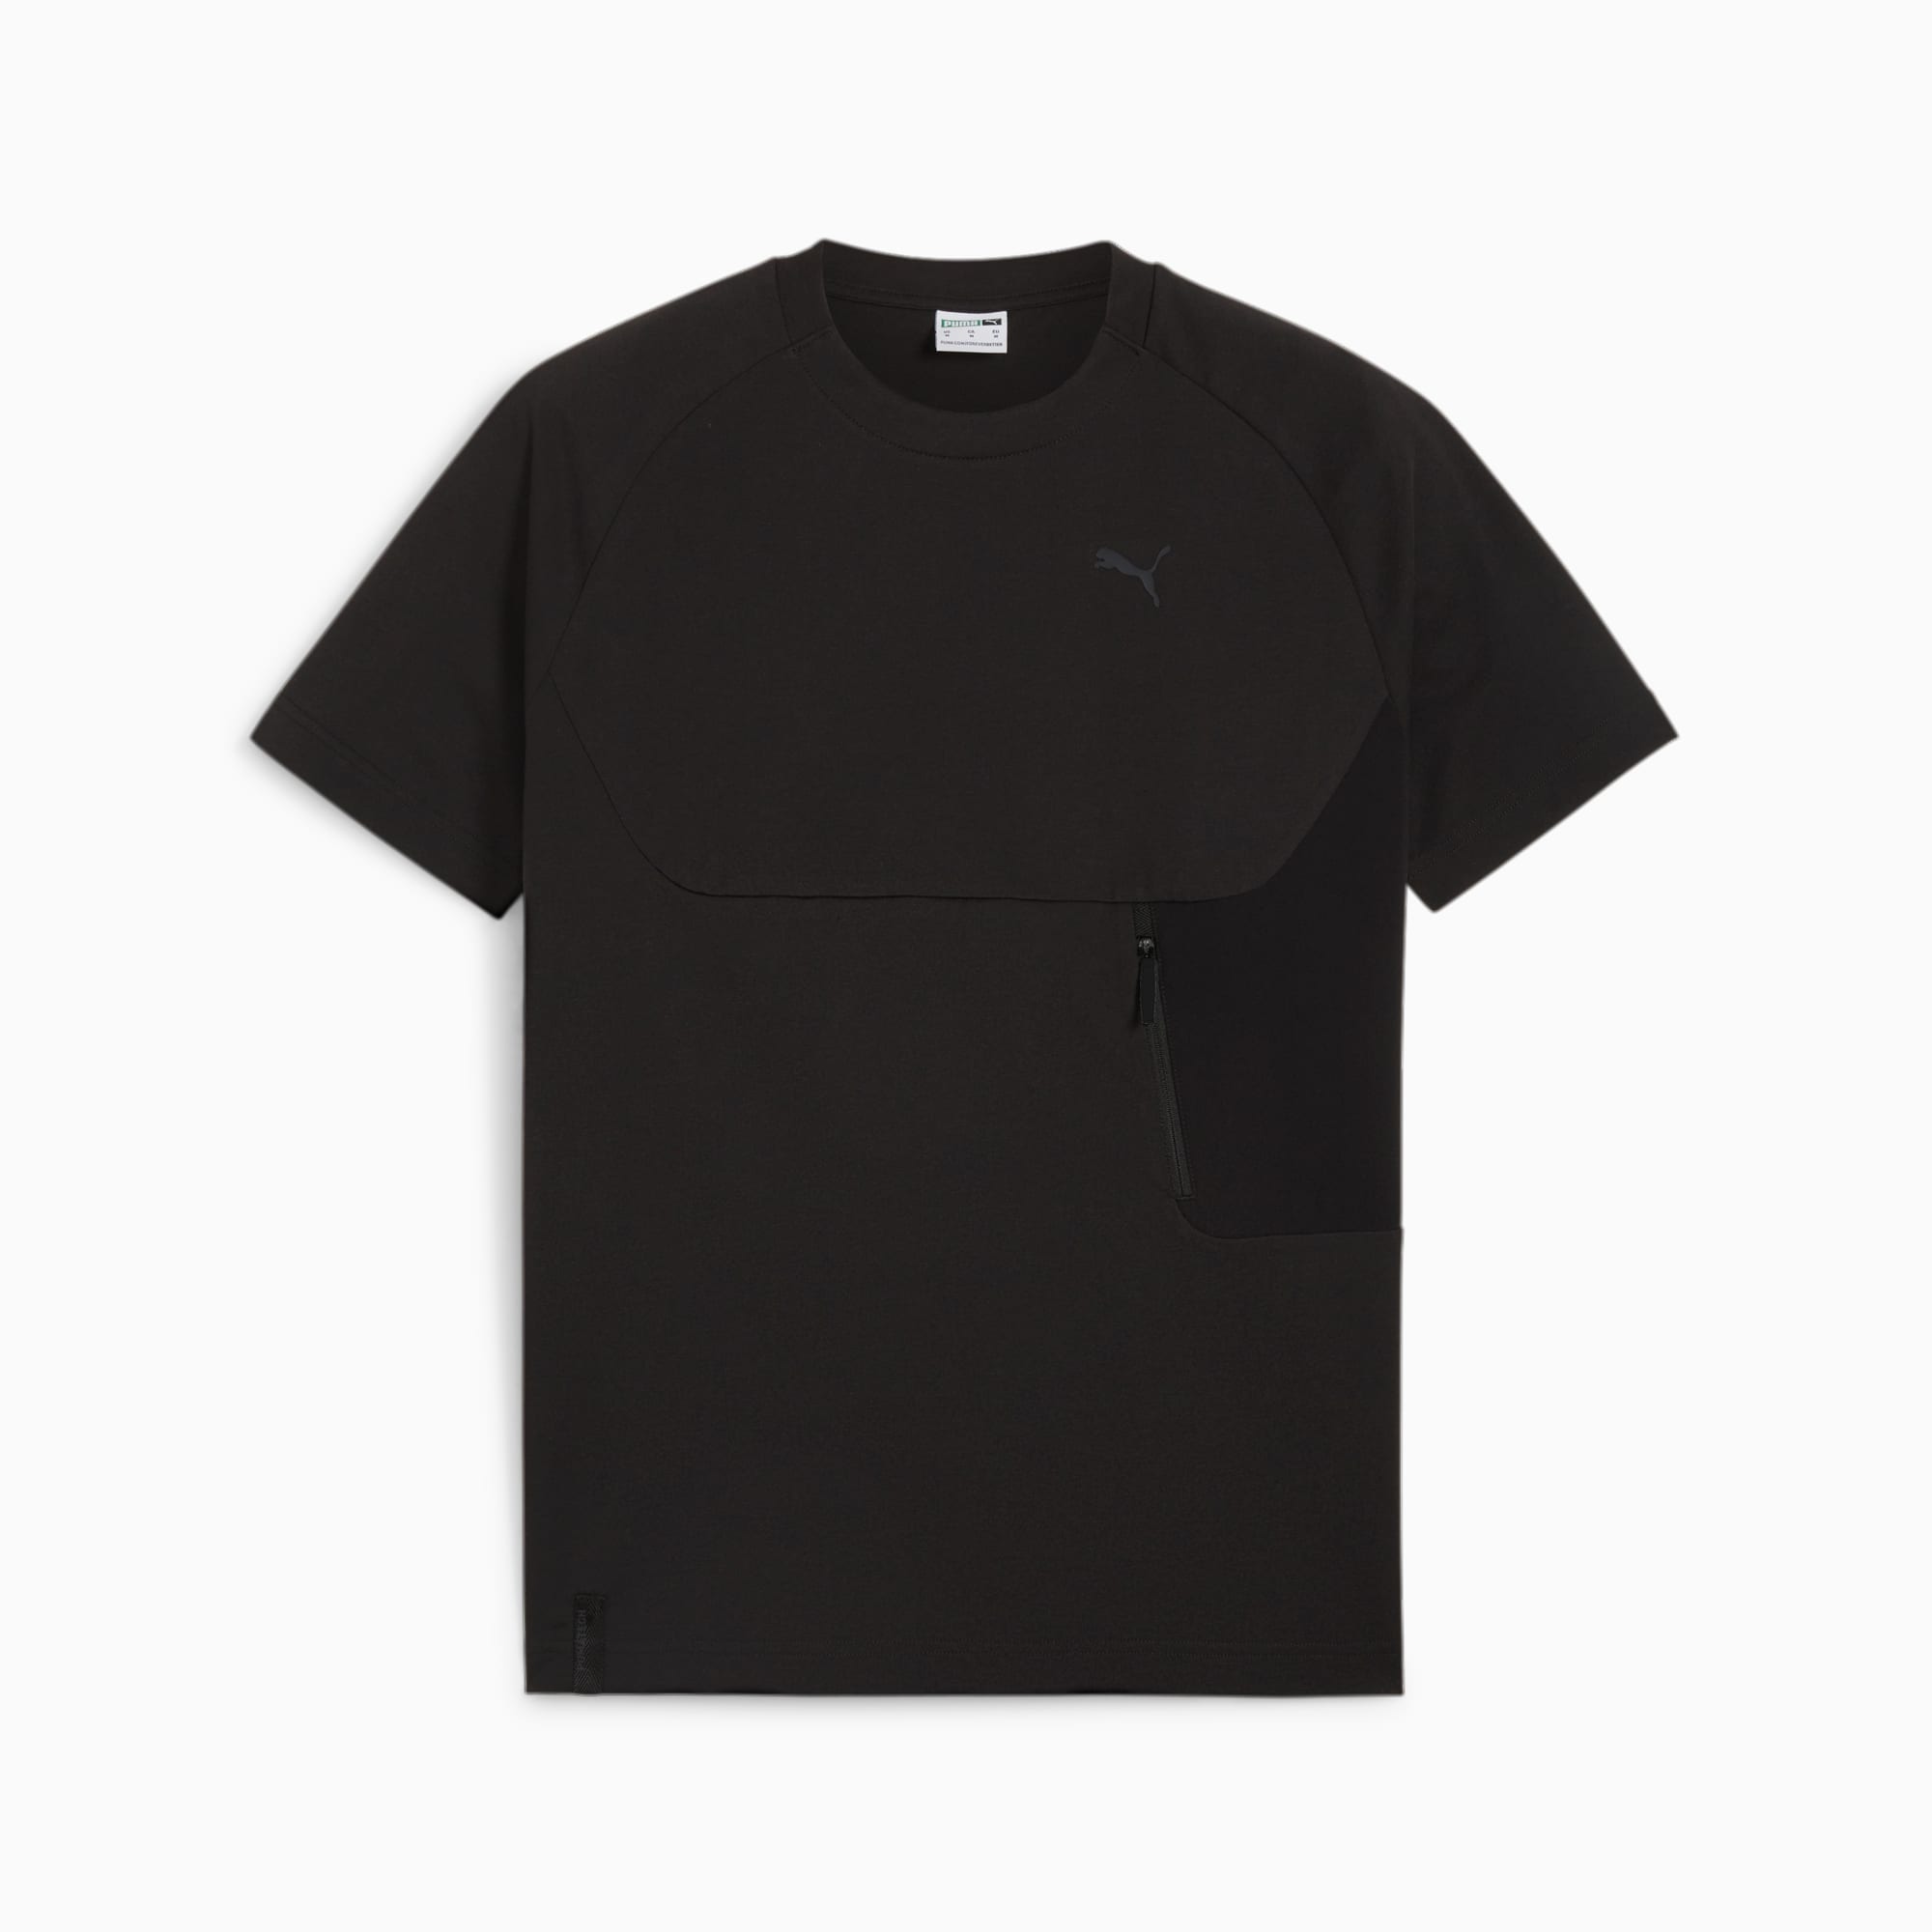 PUMATECH T-Shirt Mit Tasche Herren, Schwarz, Größe: S, Kleidung